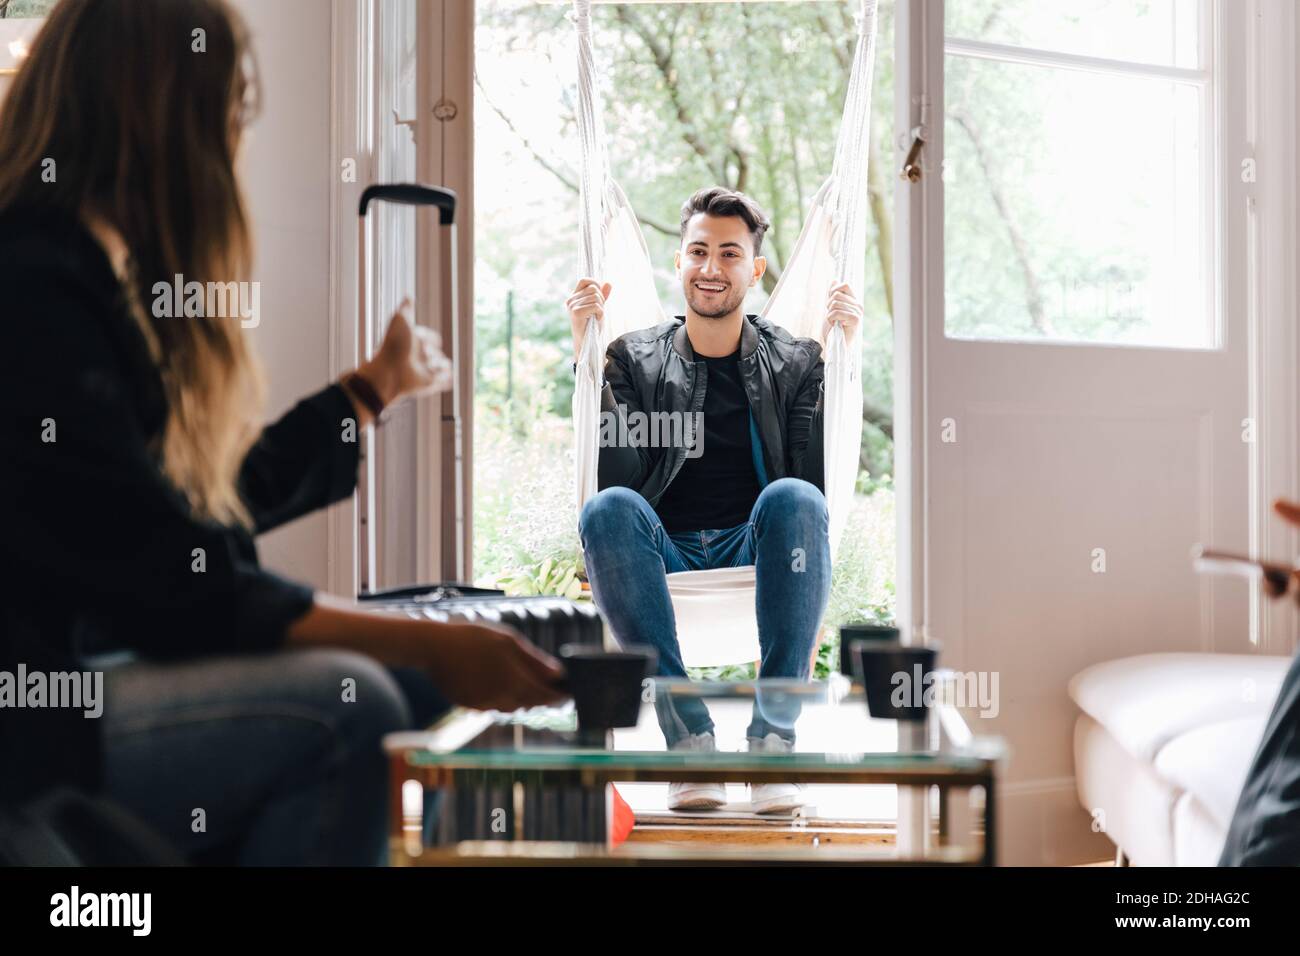 Junge Frau im Gespräch mit männlichen Freund sitzen in Schaukel an Wohnzimmer Stockfoto